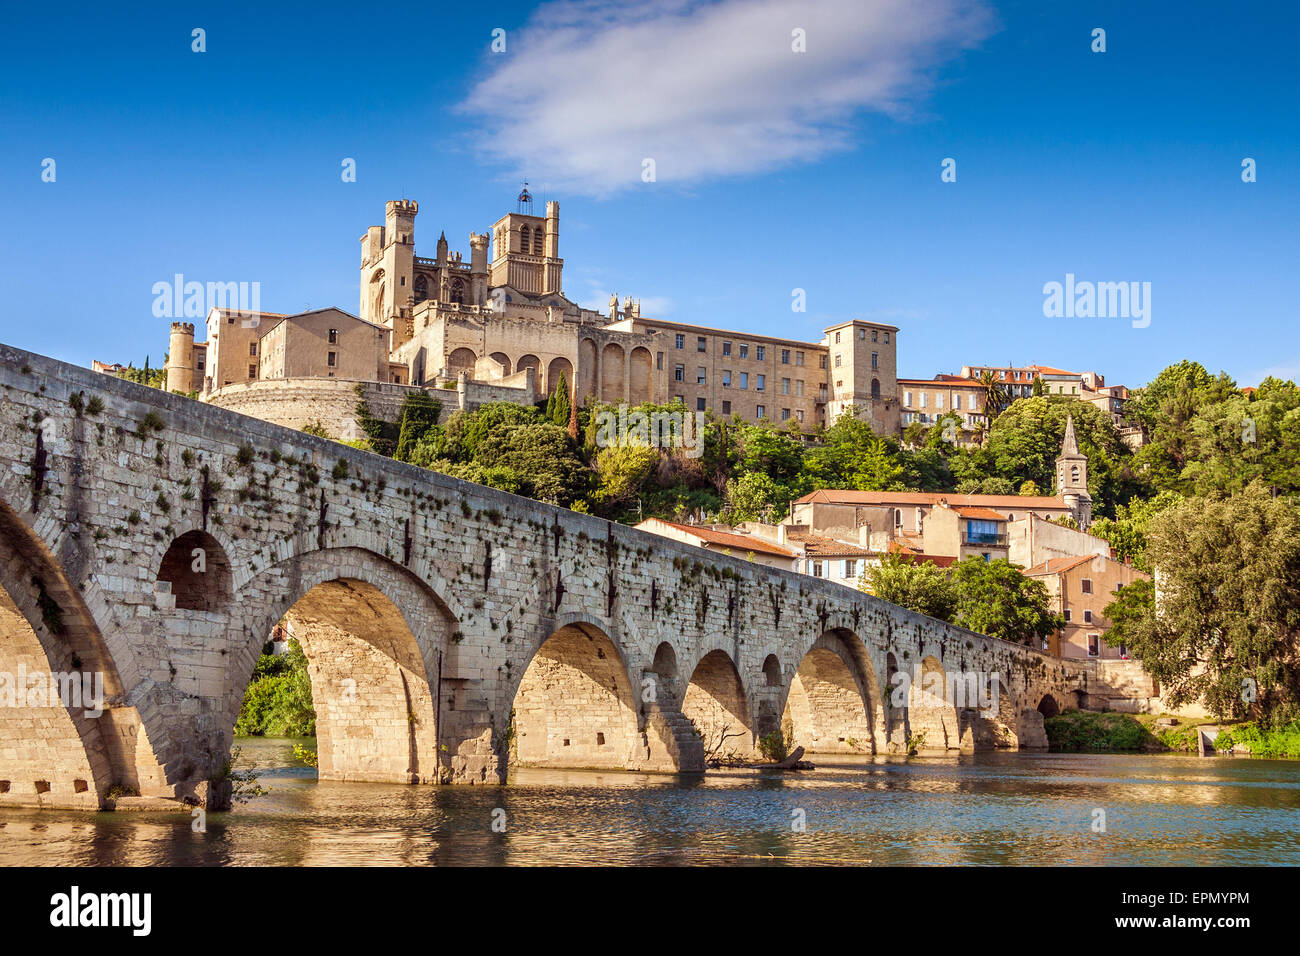 La cathédrale Saint-Nazaire et le Pont Vieux, Béziers, France Banque D'Images